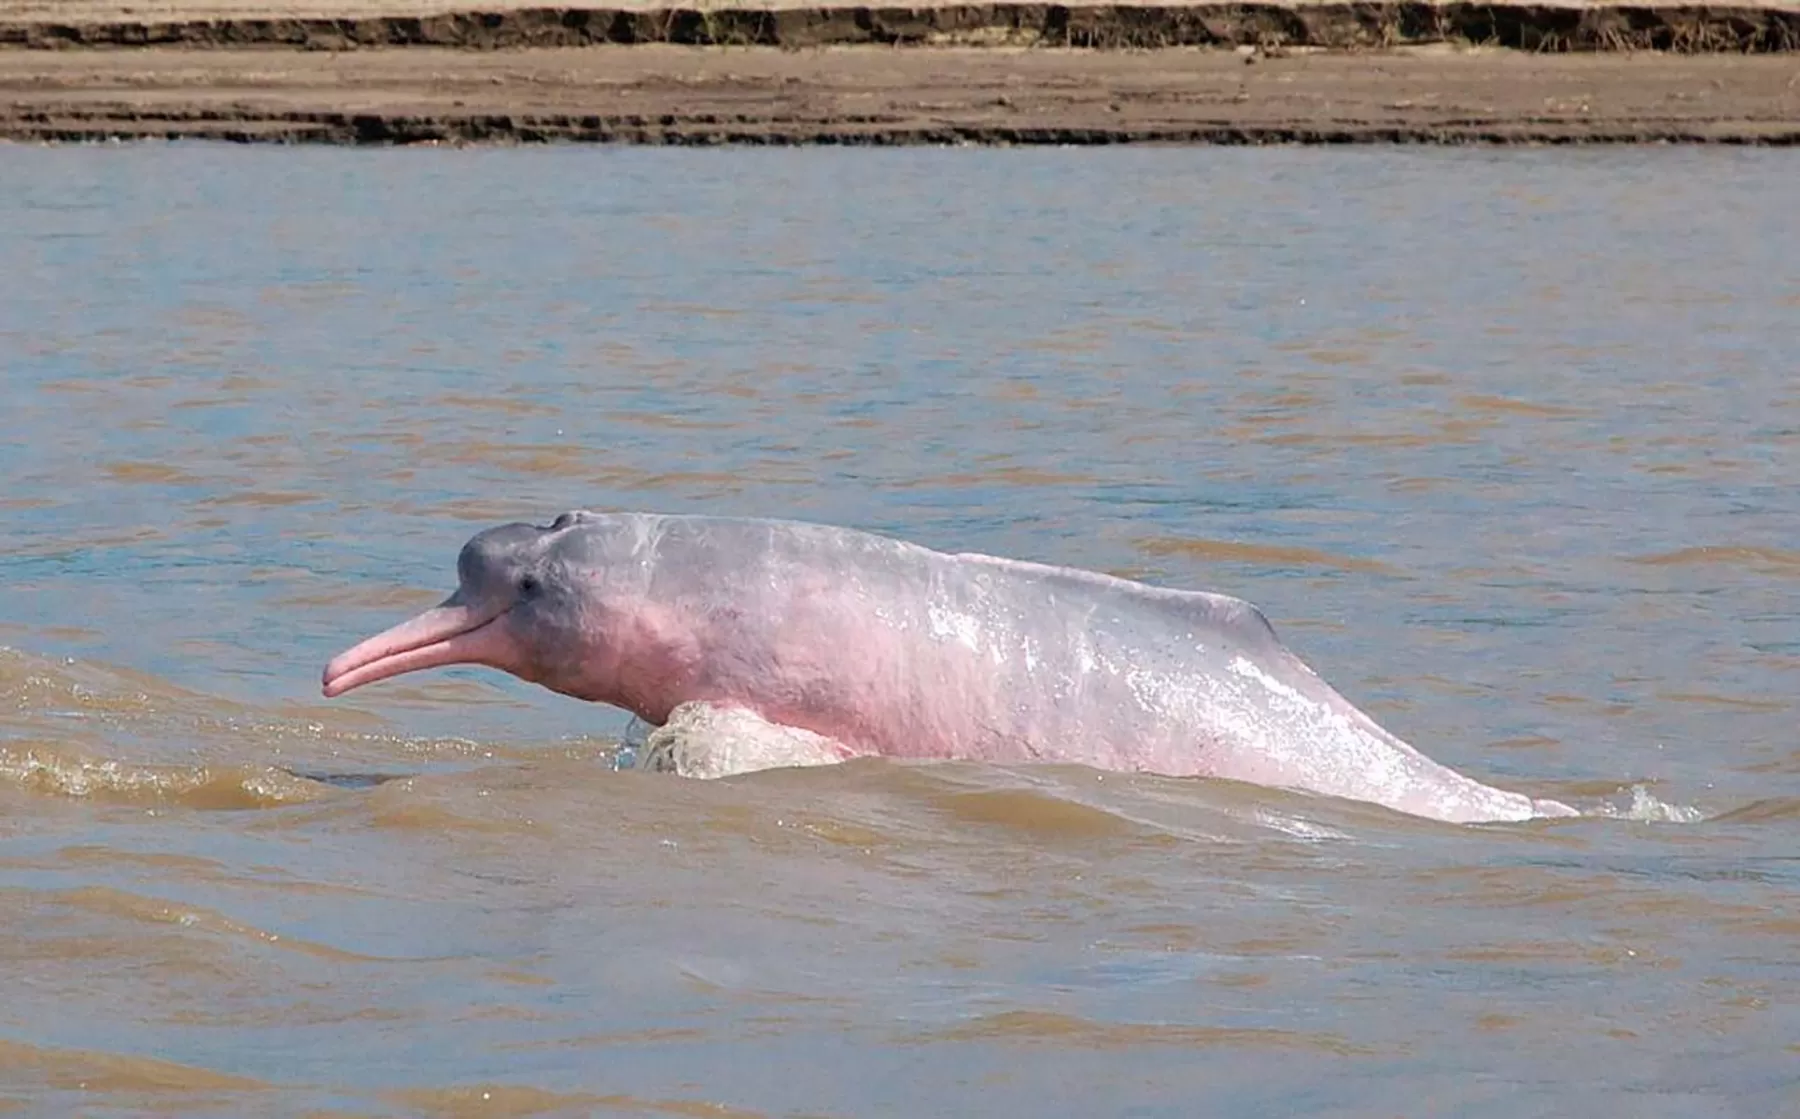 Denuncian en Orocué, Casanare que están matando delfines rosados para vender su aceite.